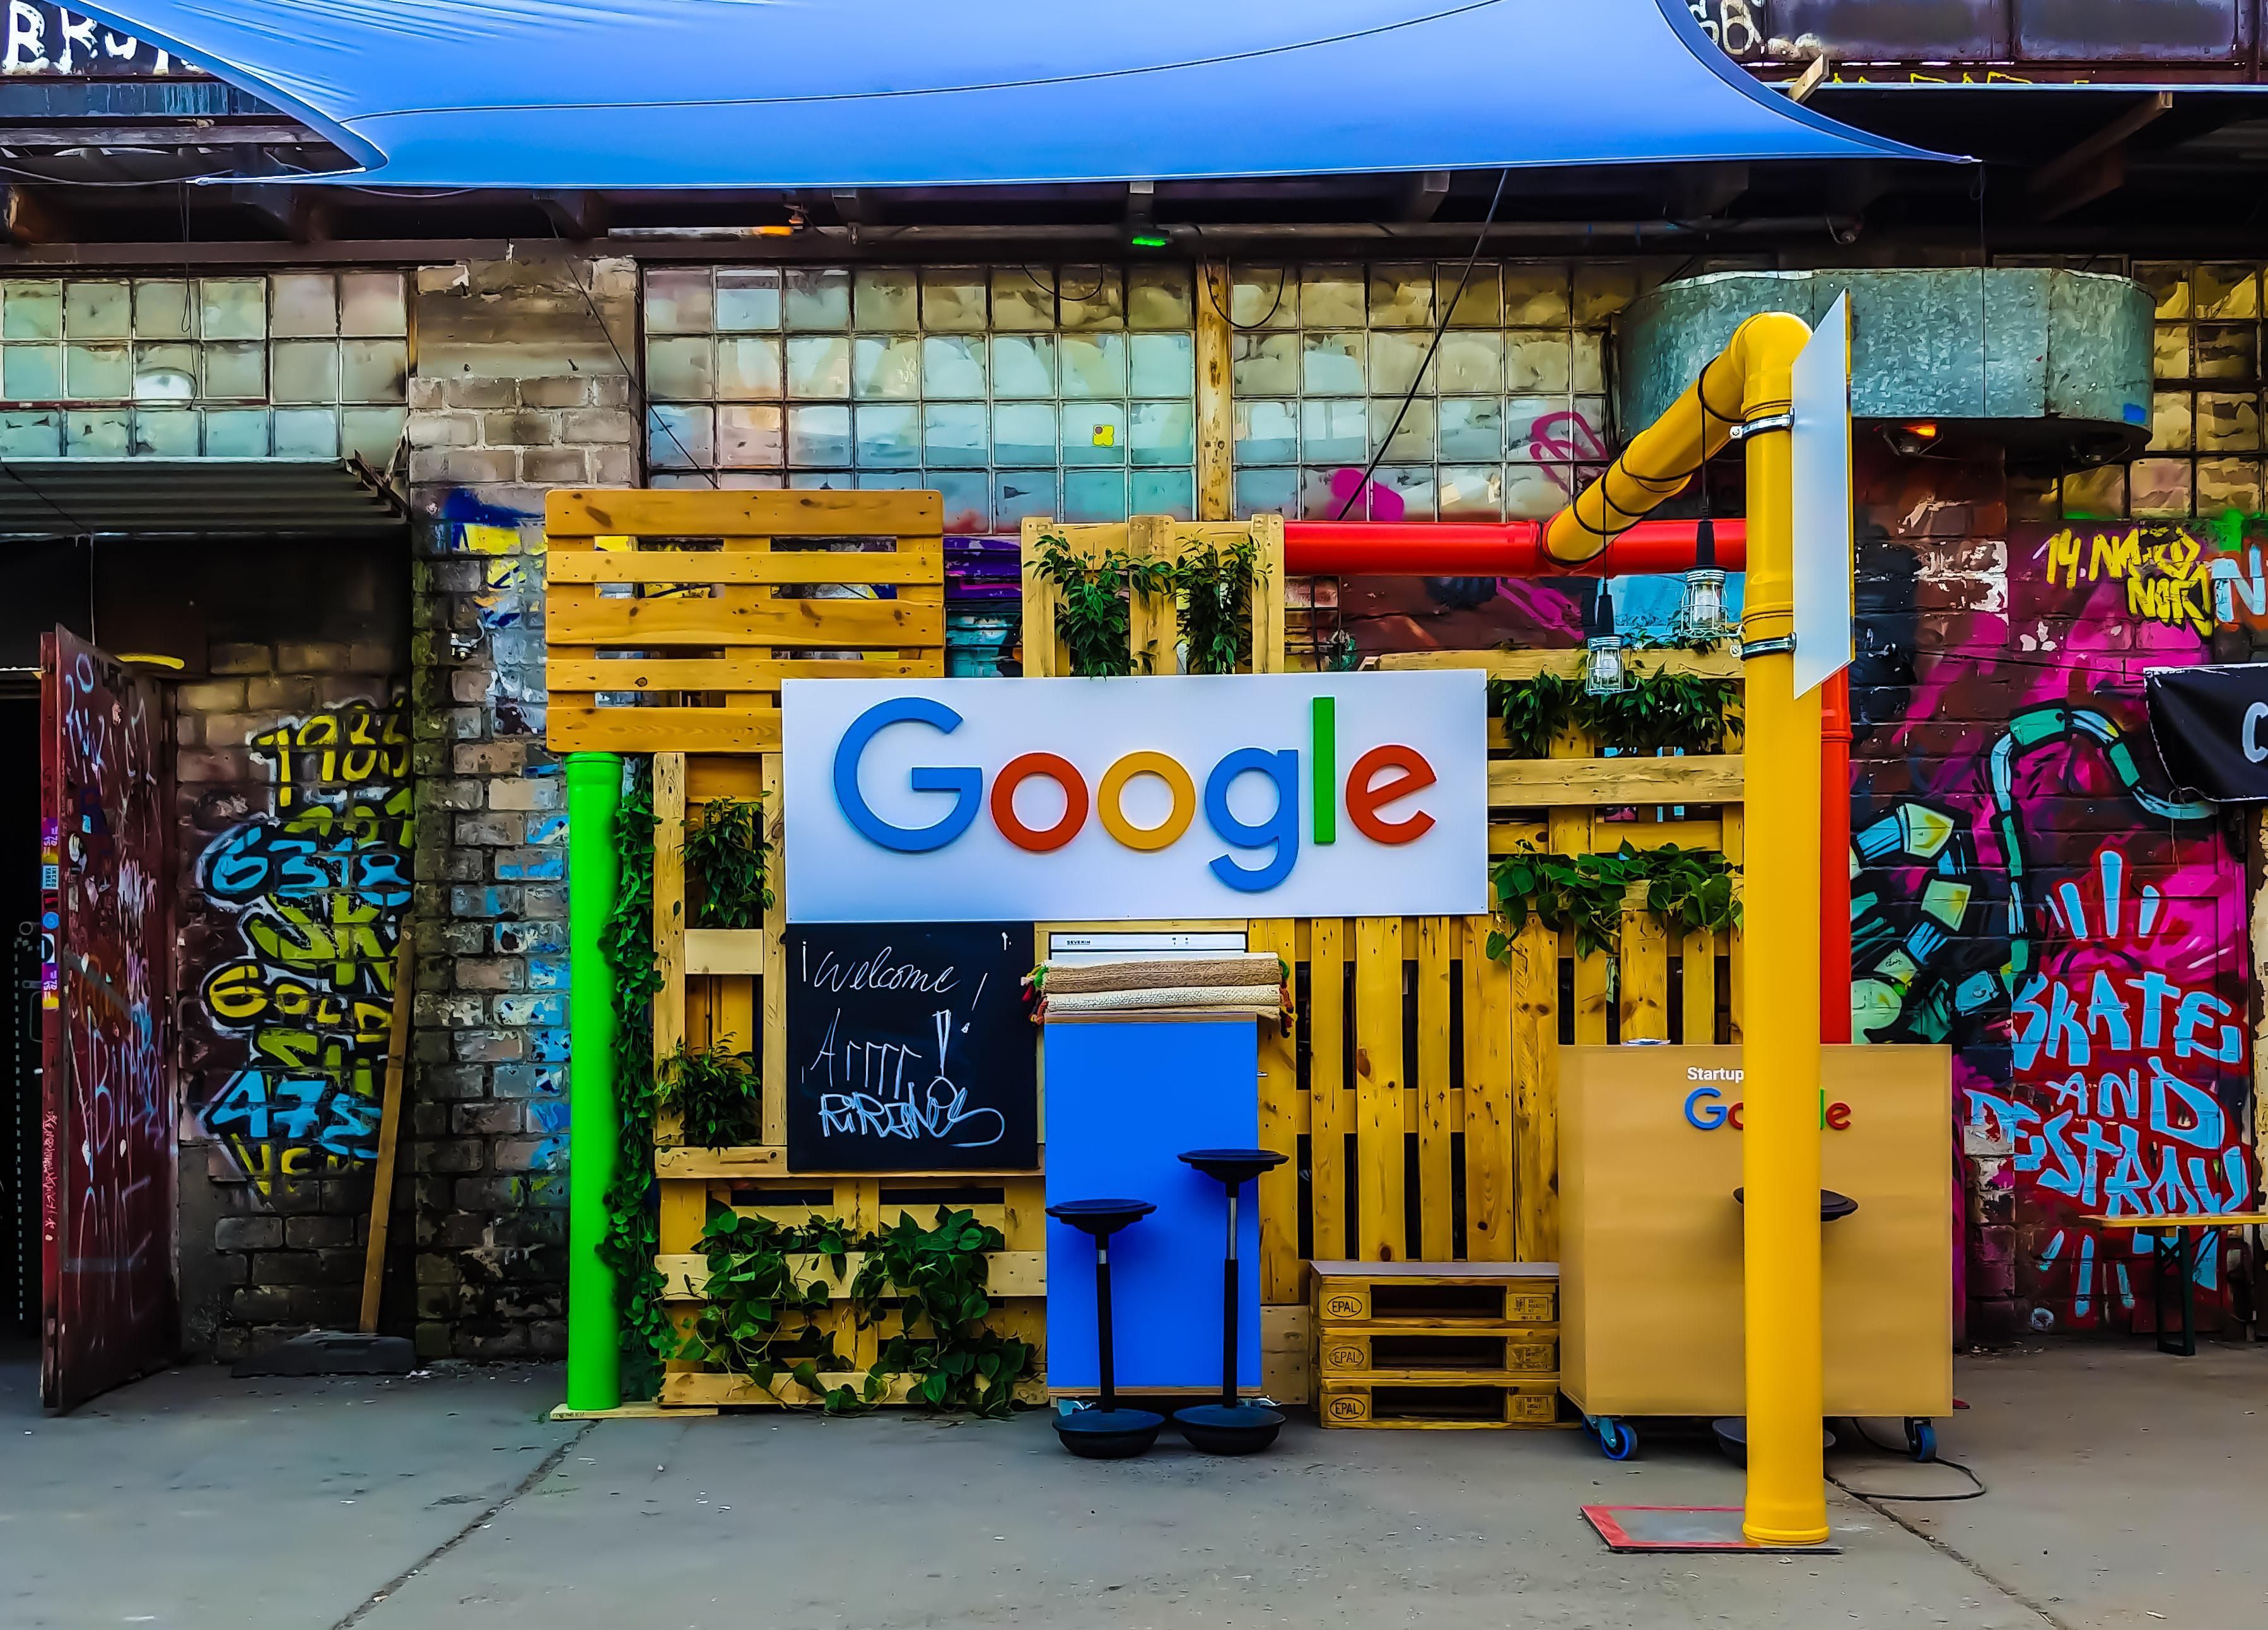 A Google logója egy sárga raklapokból összeállított installáción egy összegraffitizett fal előtt